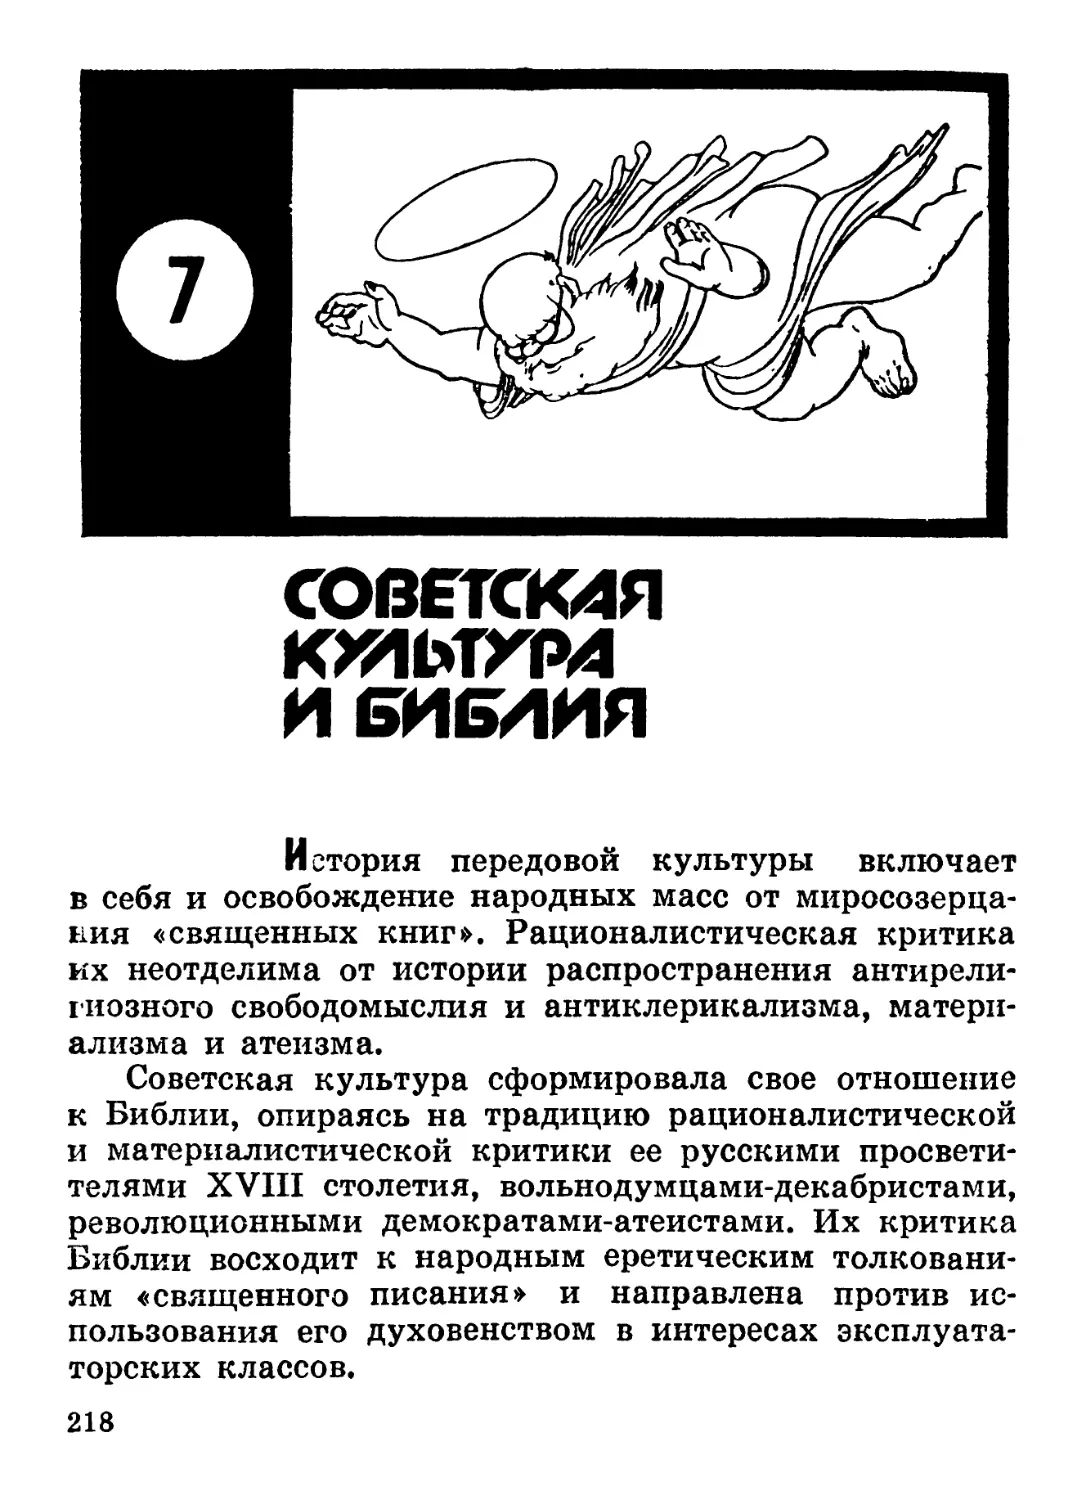 7. Советская культура и Библия